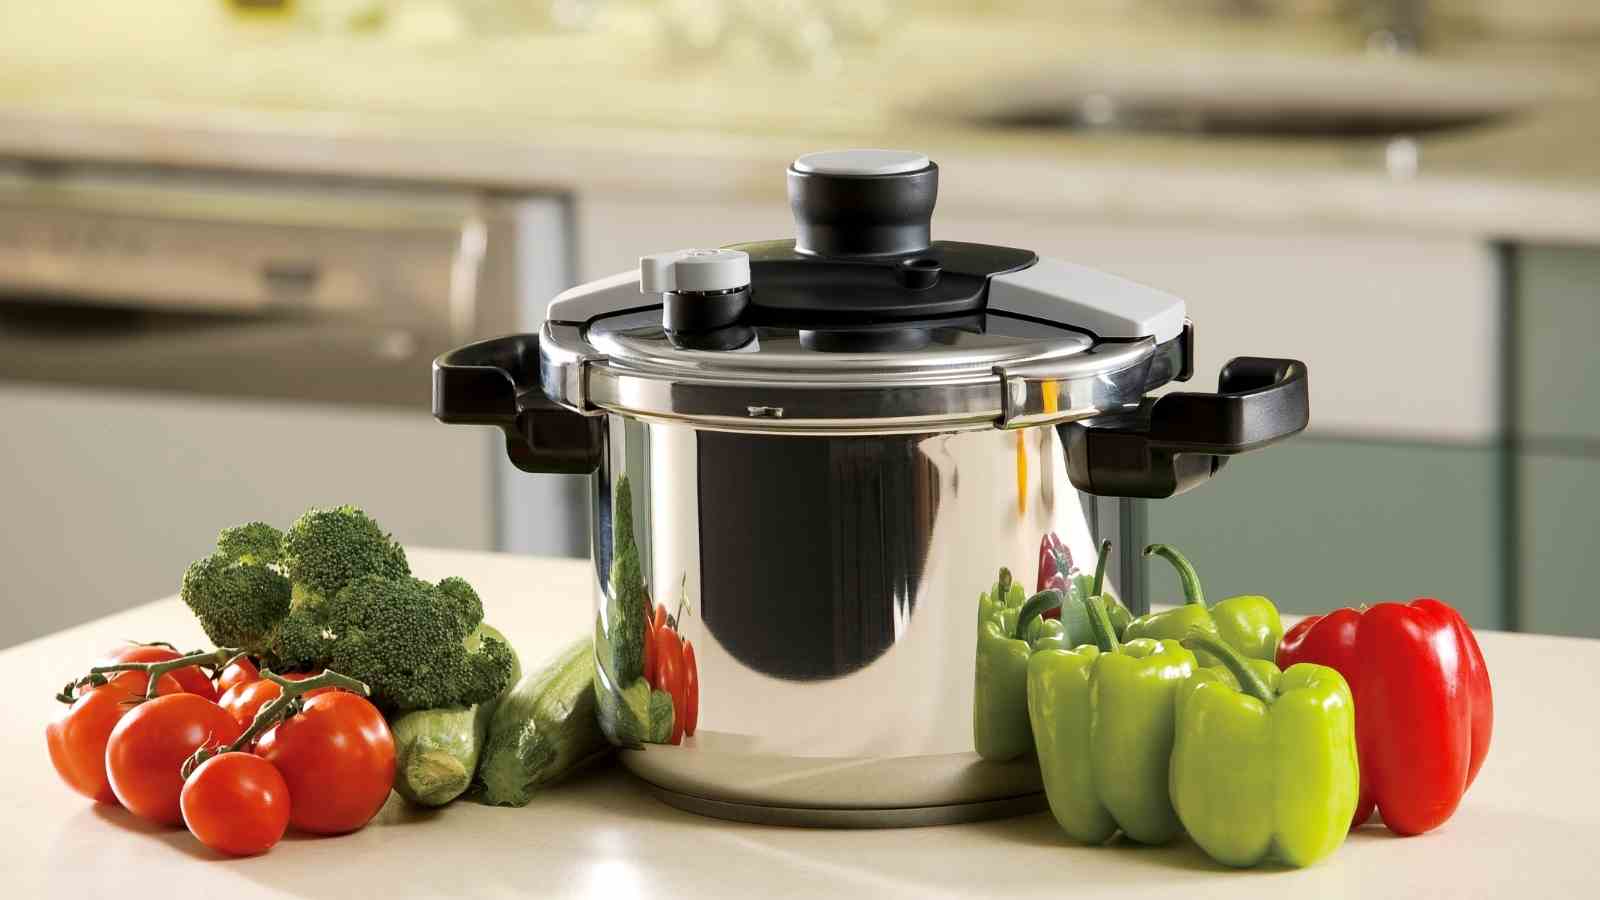 Is it true that pressure cooking depletes nutrients